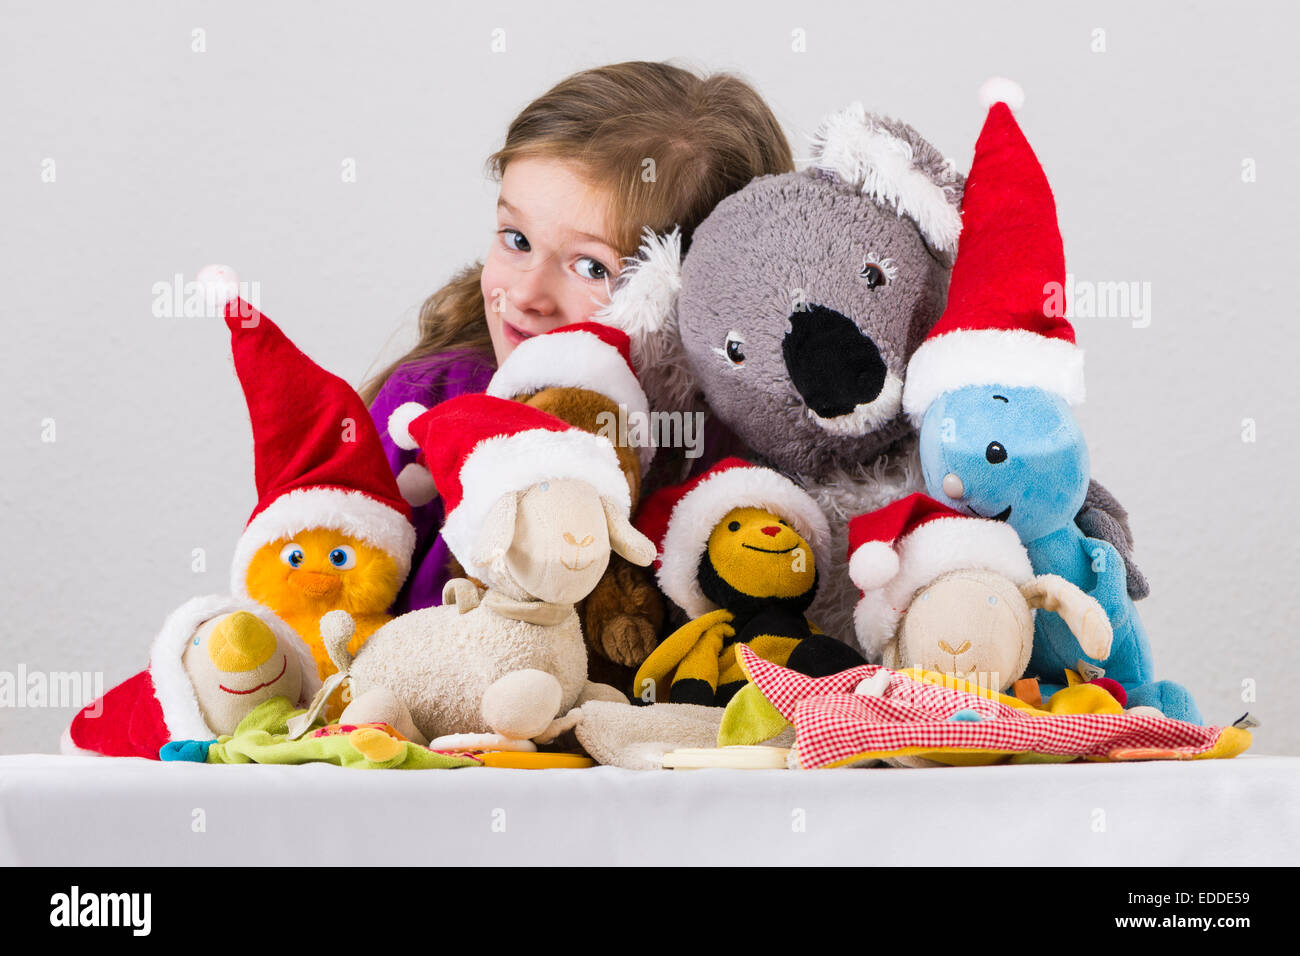 Niña de 3 años, con juguetes de peluche luciendo gorros de Santa Claus Foto de stock